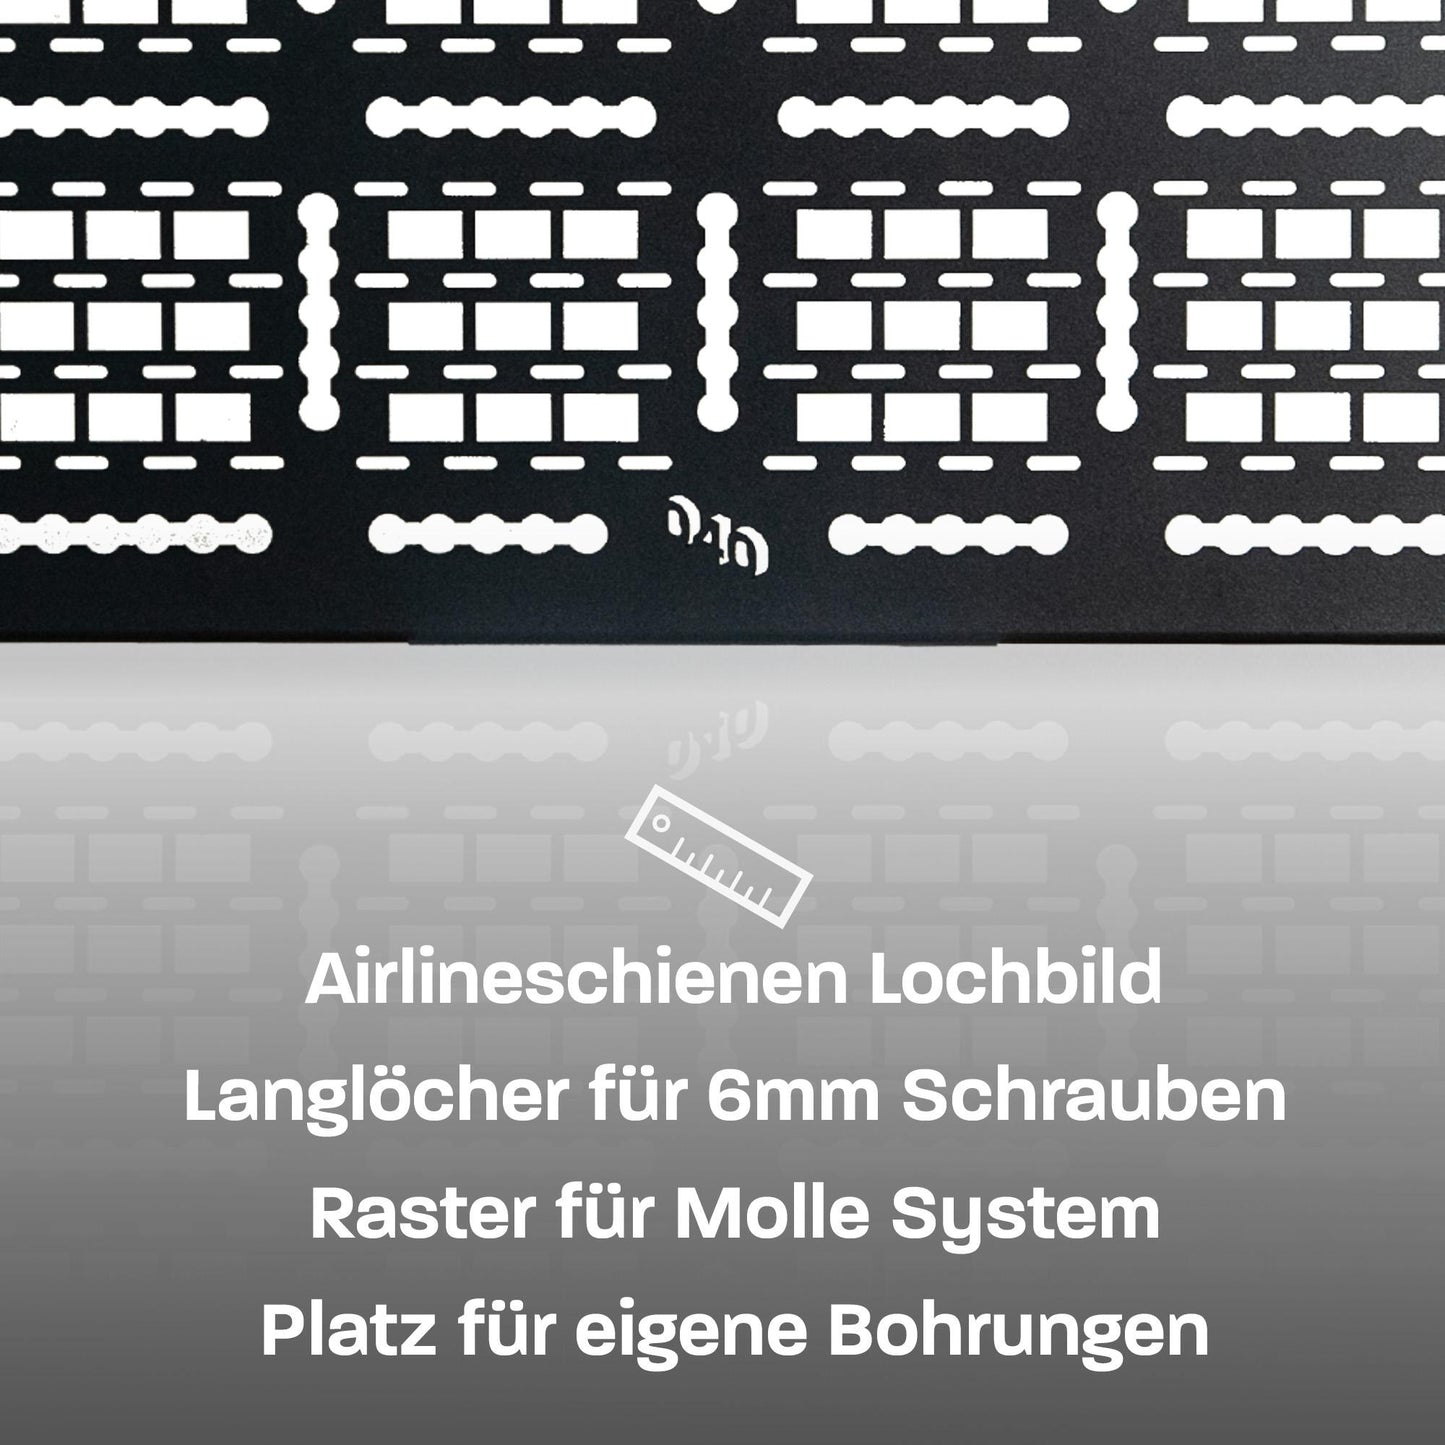 040 Parts Molle Board für VW T5 T6 T6.1 Fahrradträger Gepäckträger Offroad Zubehör kompatibel mit original Heckträger LOGO